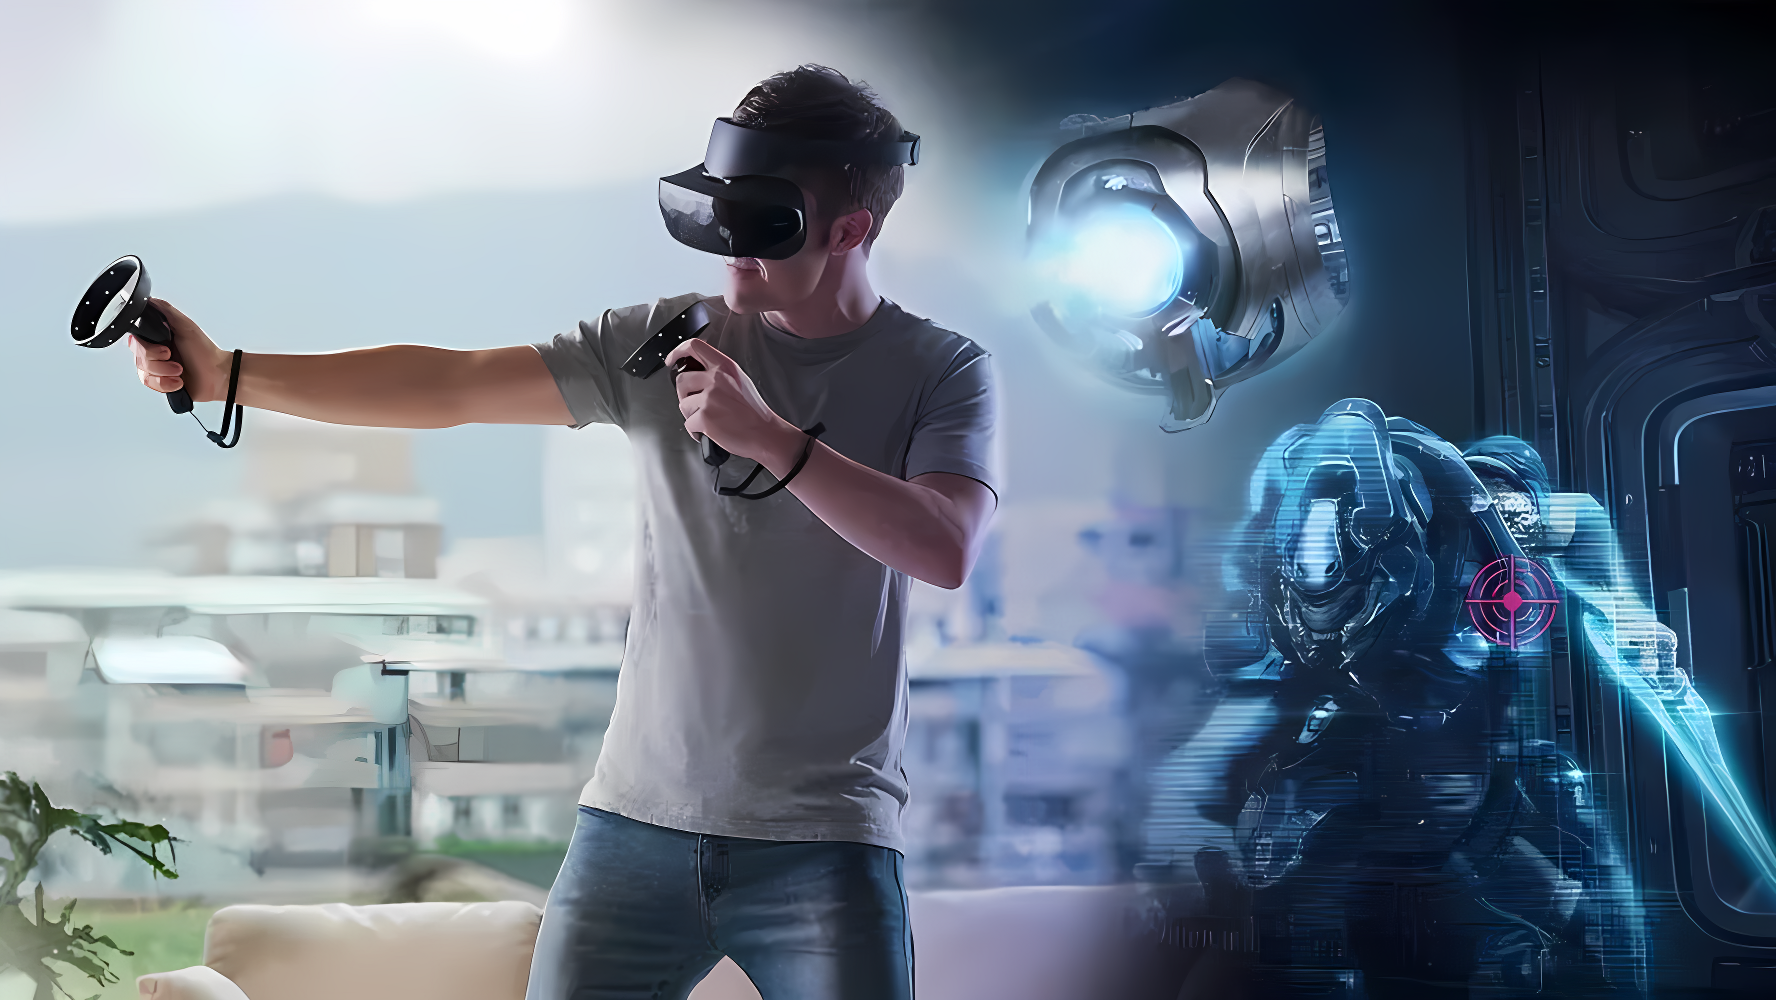 一位男士戴着虚拟现实头盔，手持控制器，似乎正在家中体验沉浸式的虚拟现实游戏。背景有科幻元素。